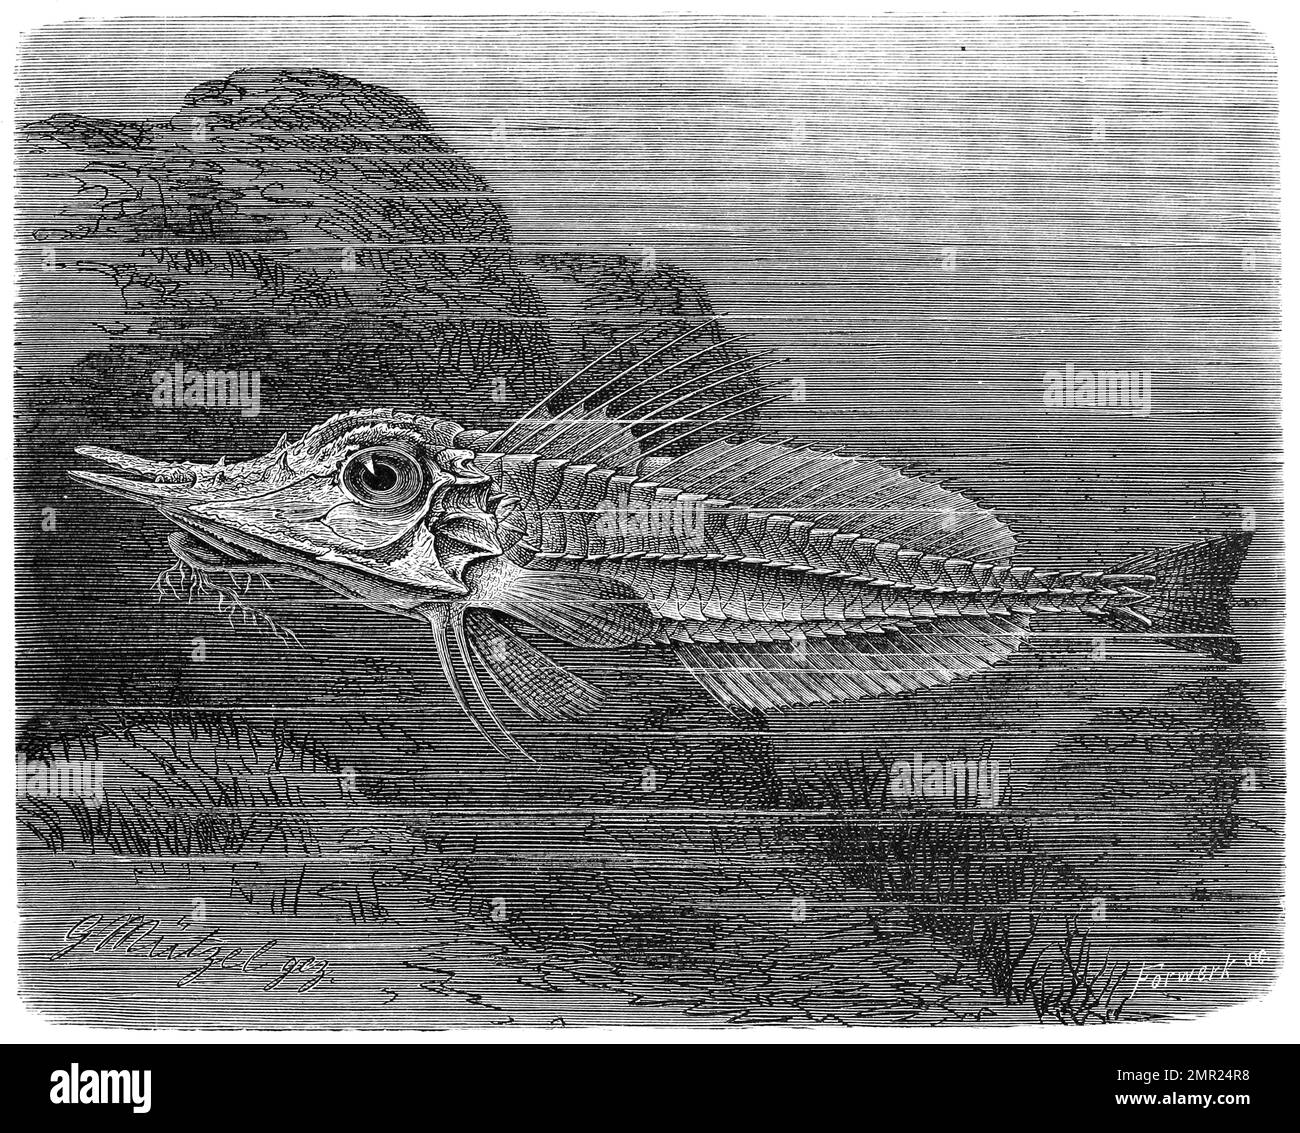 Fisch, Malarmat, Peristedion cataphractum, auch Panzerhahn, armoured Searobin, kommt im Atlantik vor, Historisch, digital restaurierte Reproduktion von einer Vorlage aus dem 19. Jahrhundert Stock Photo